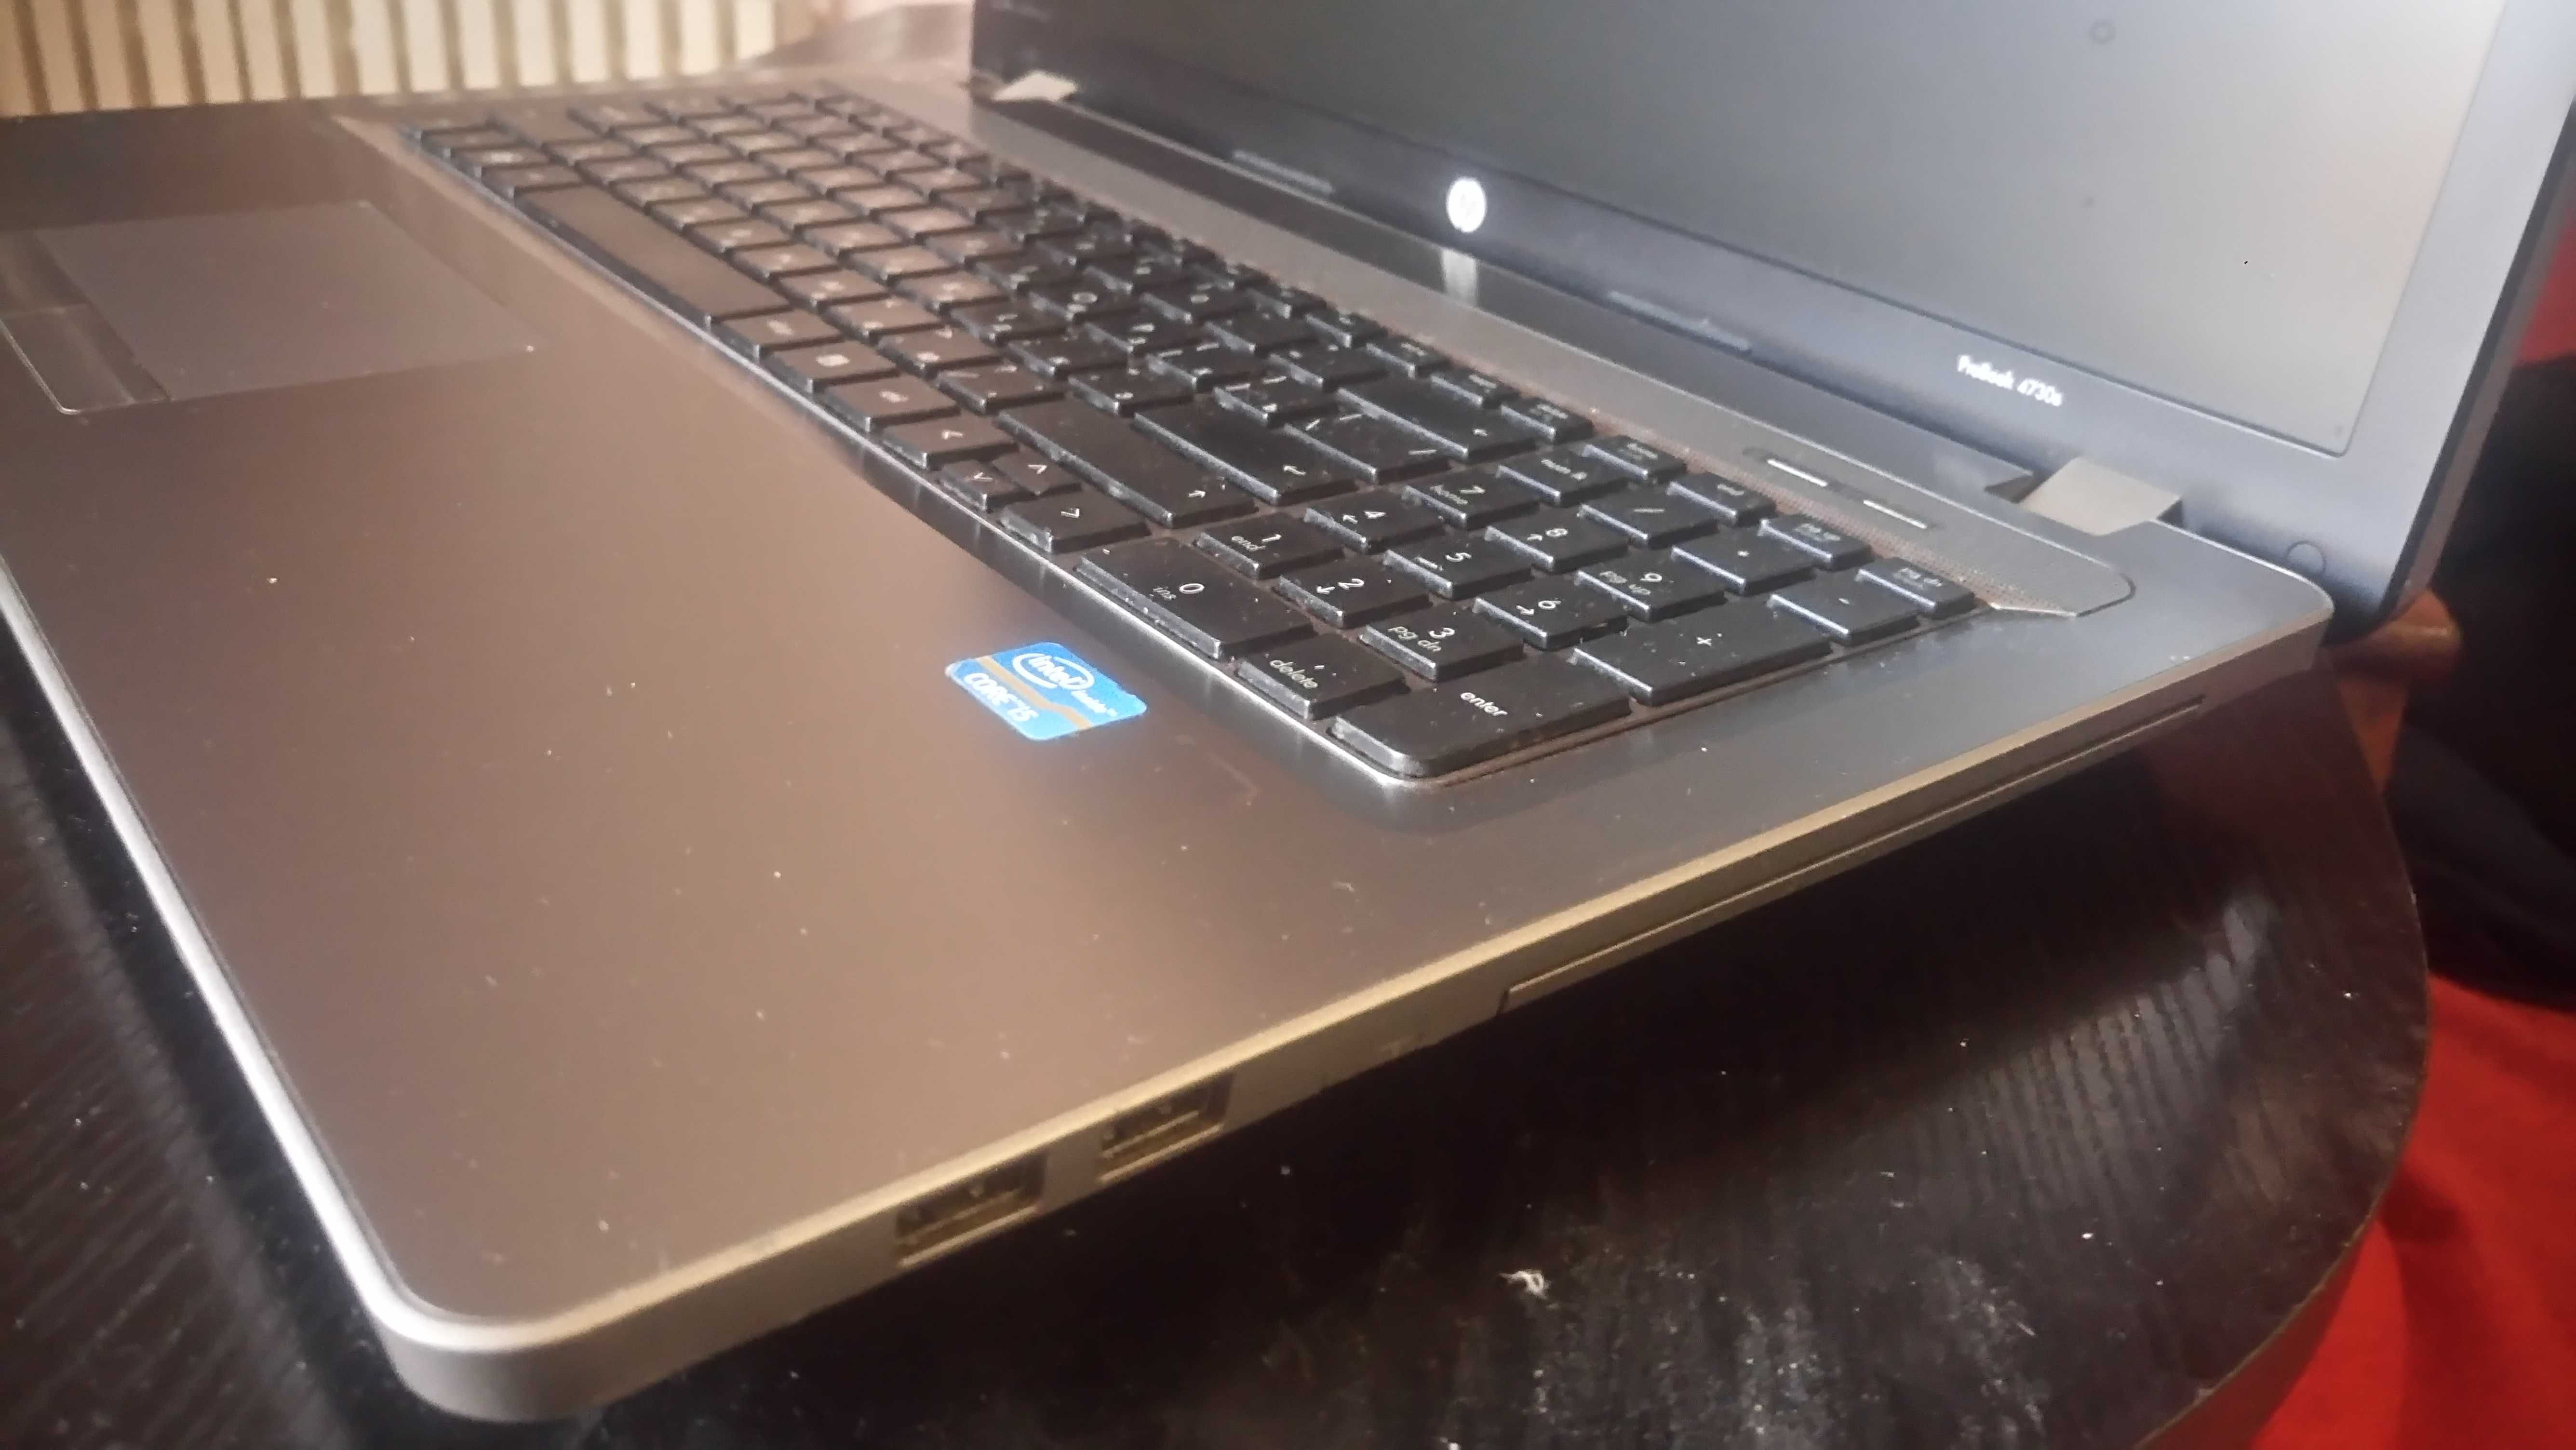 Ноутбук HP ProBook 4730s (Intel Core i5-2430M, дисплей 17,3, ОЗУ4 Гб)